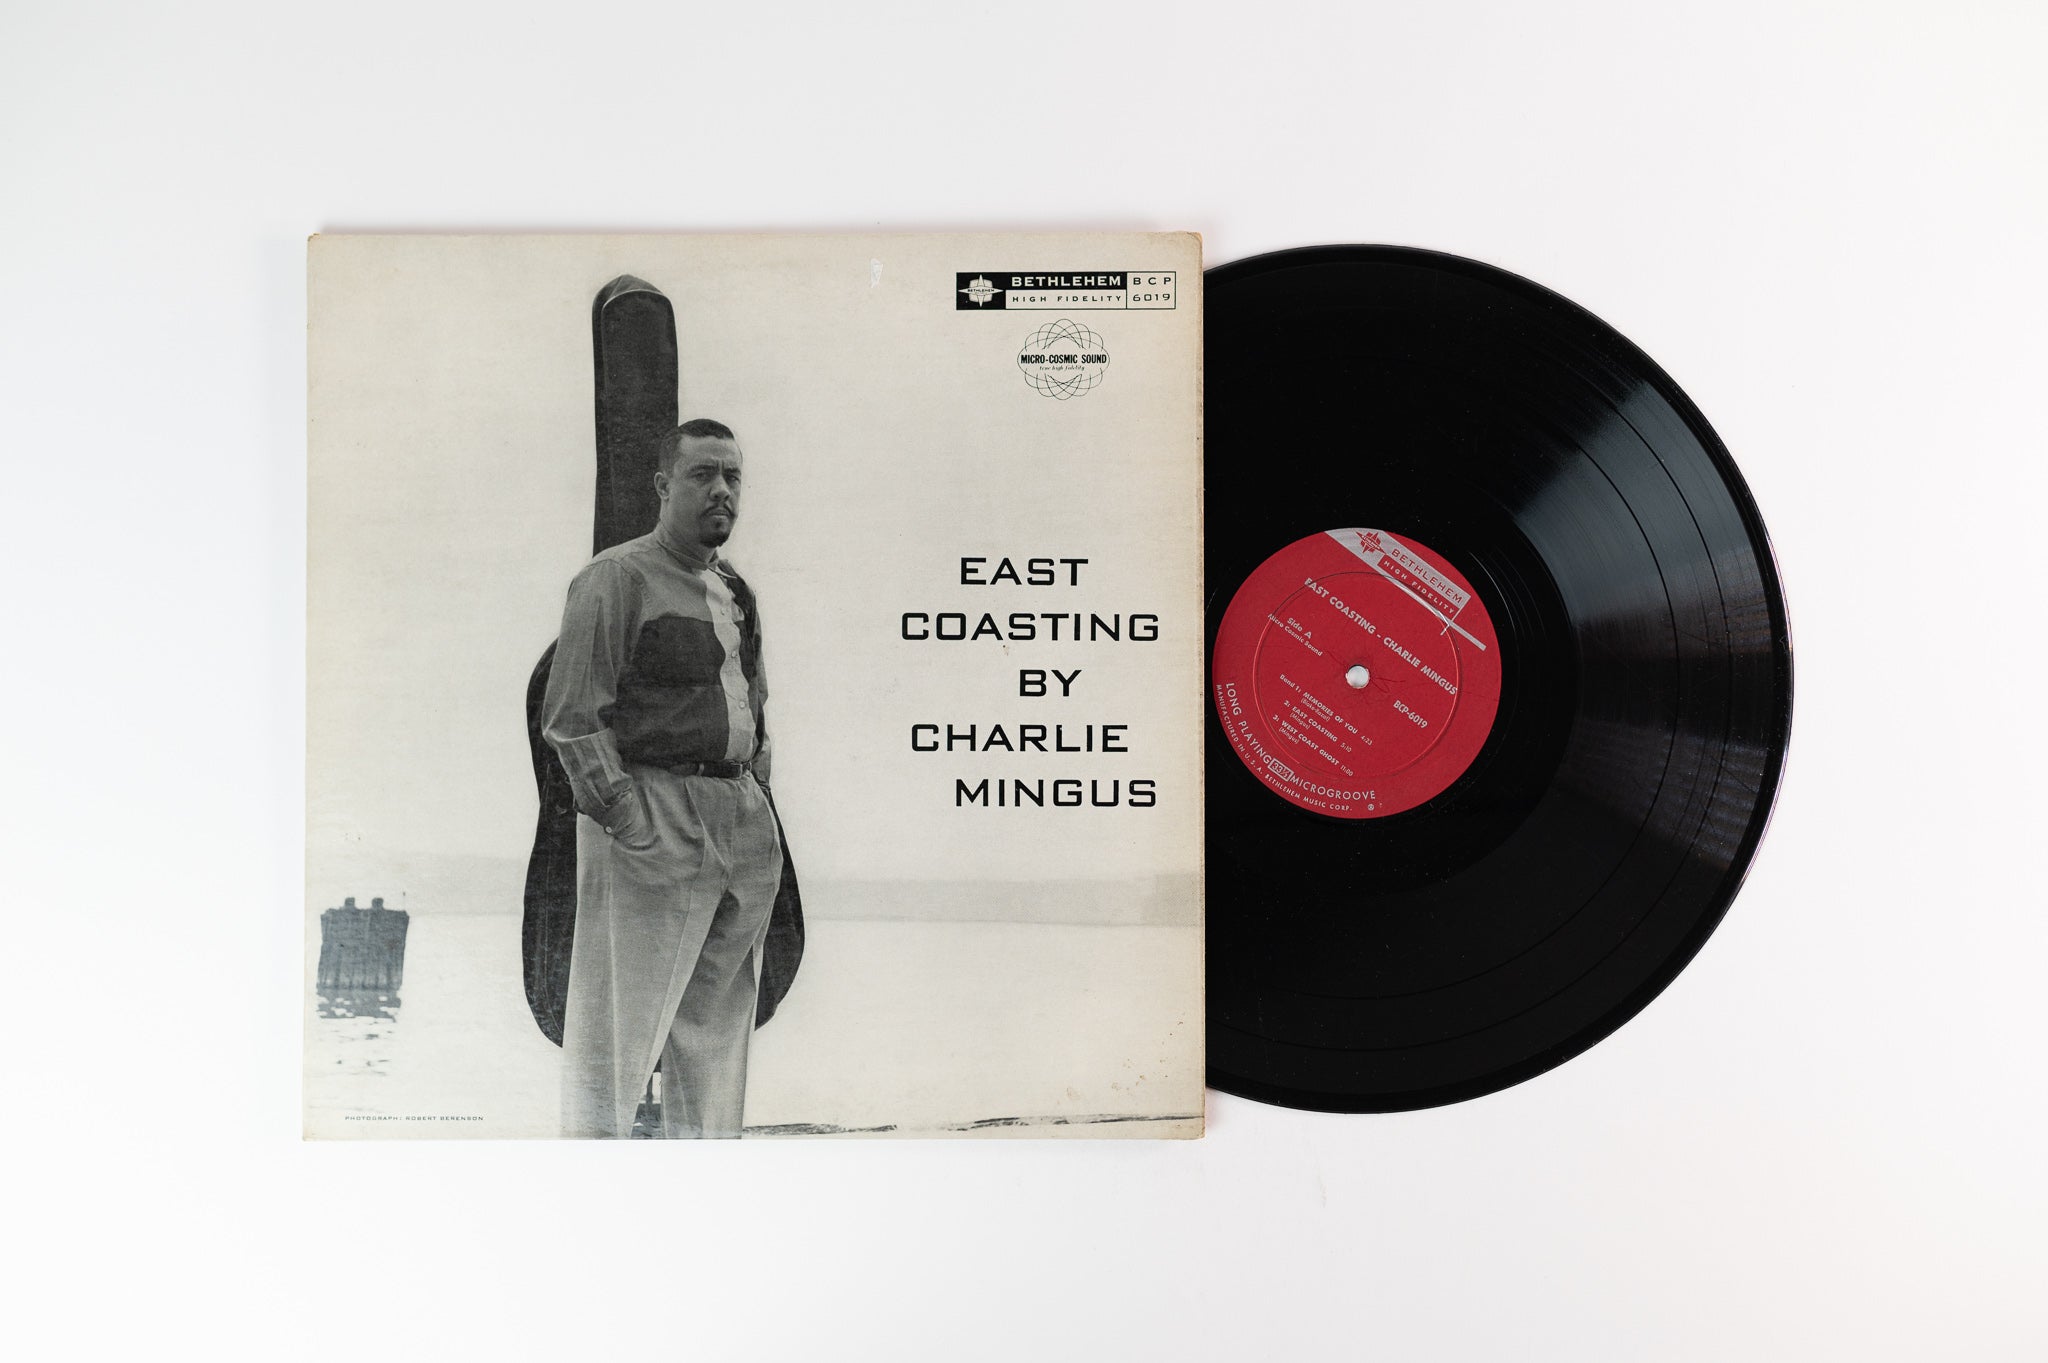 Charles Mingus - East Coasting on Bethlehm Mono Deep Groove